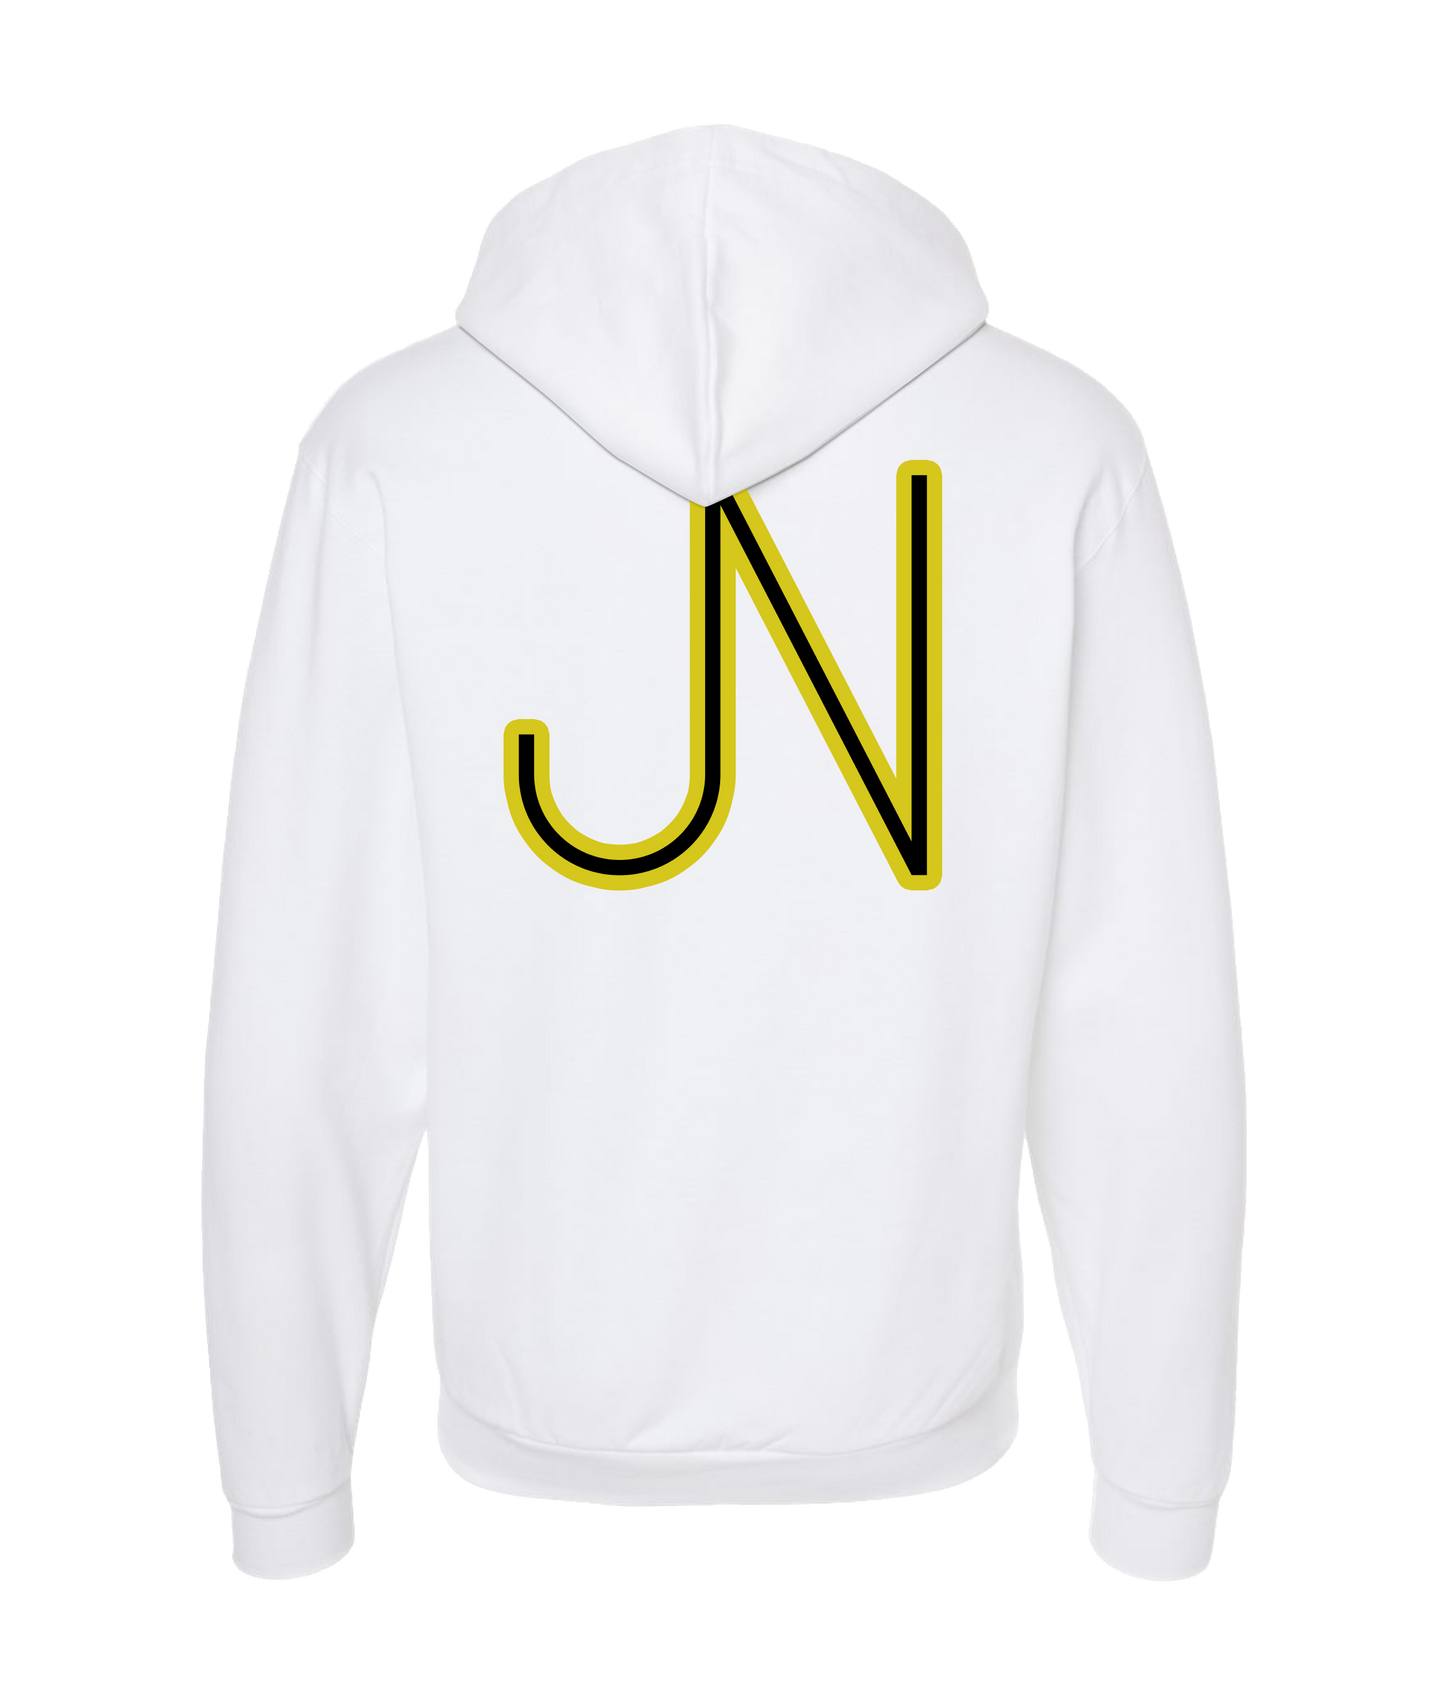 James Neary Music - JN (Yellow) - White Zip Up Hoodie